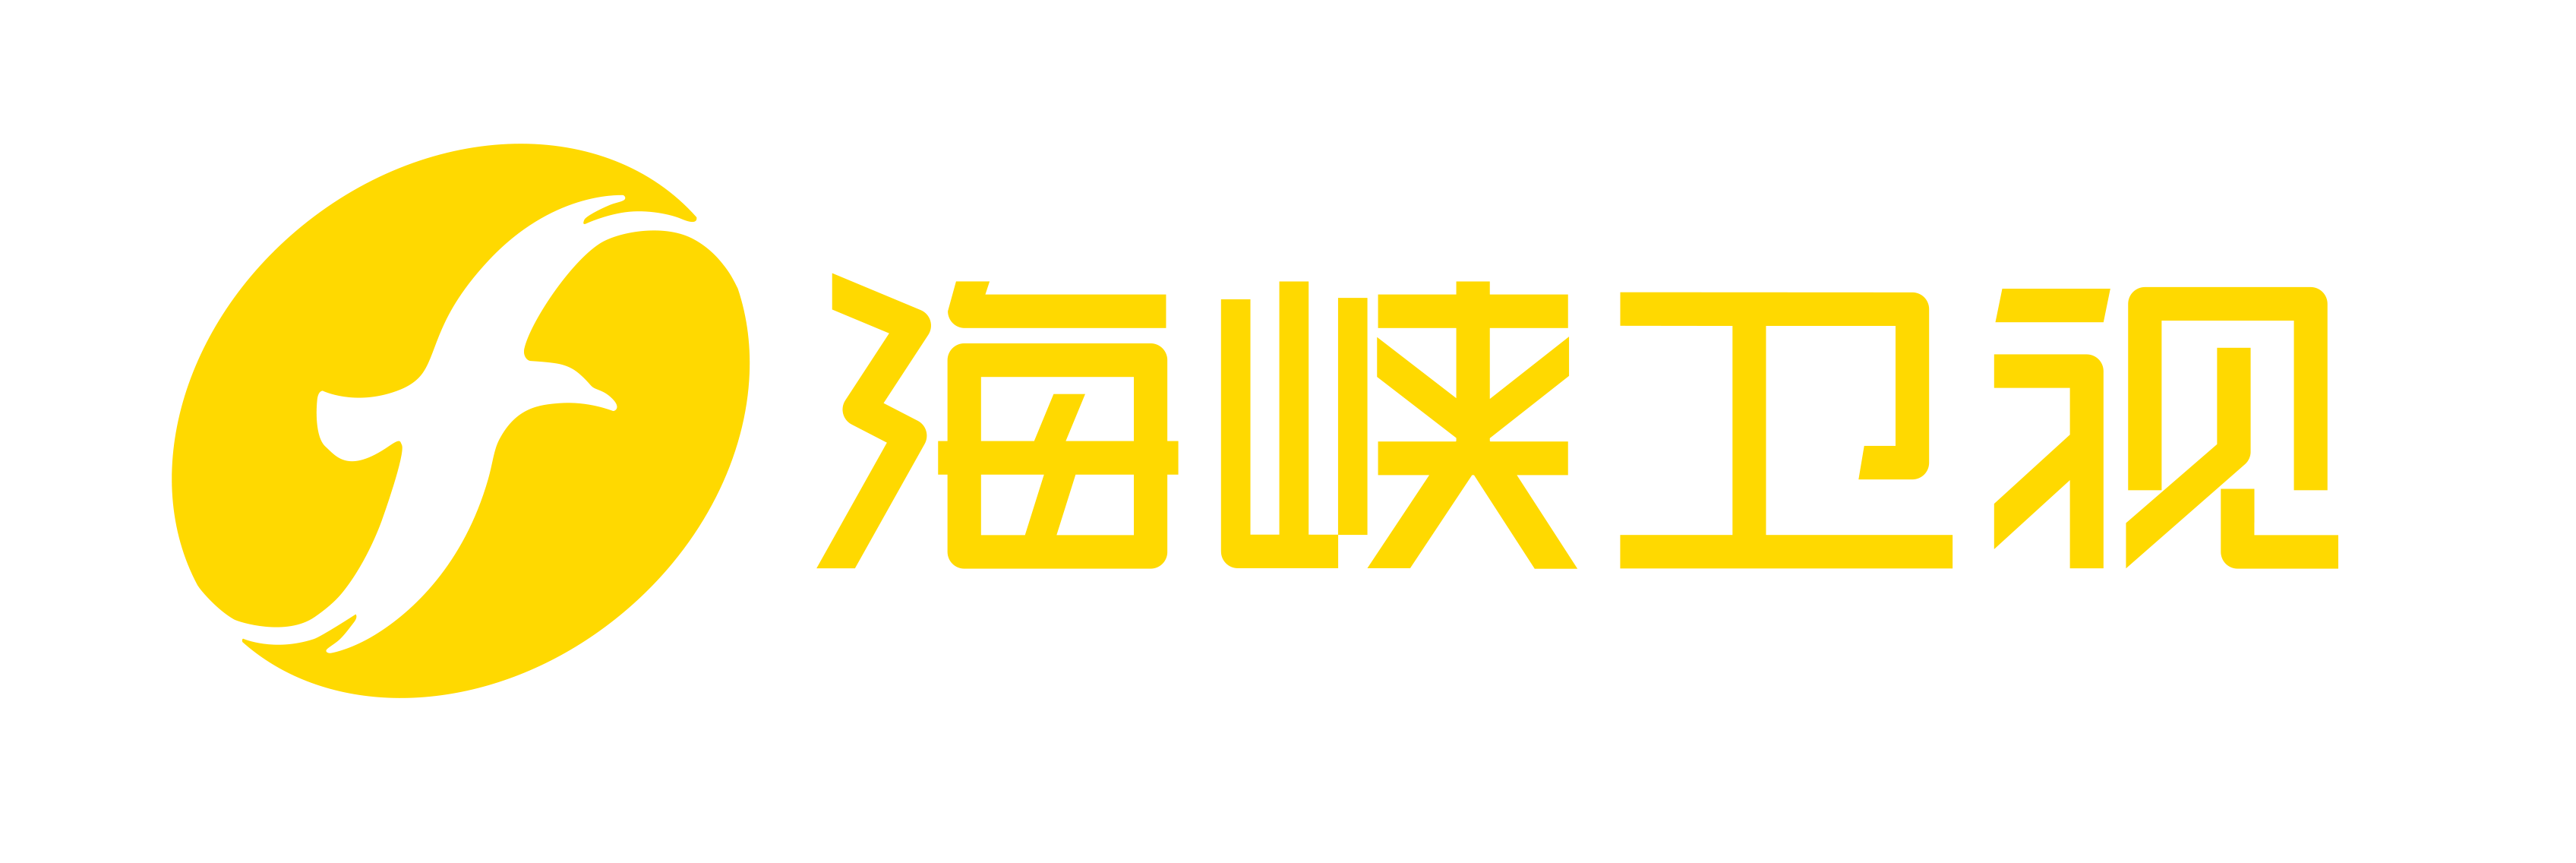 海峽衛視logo橫版.png